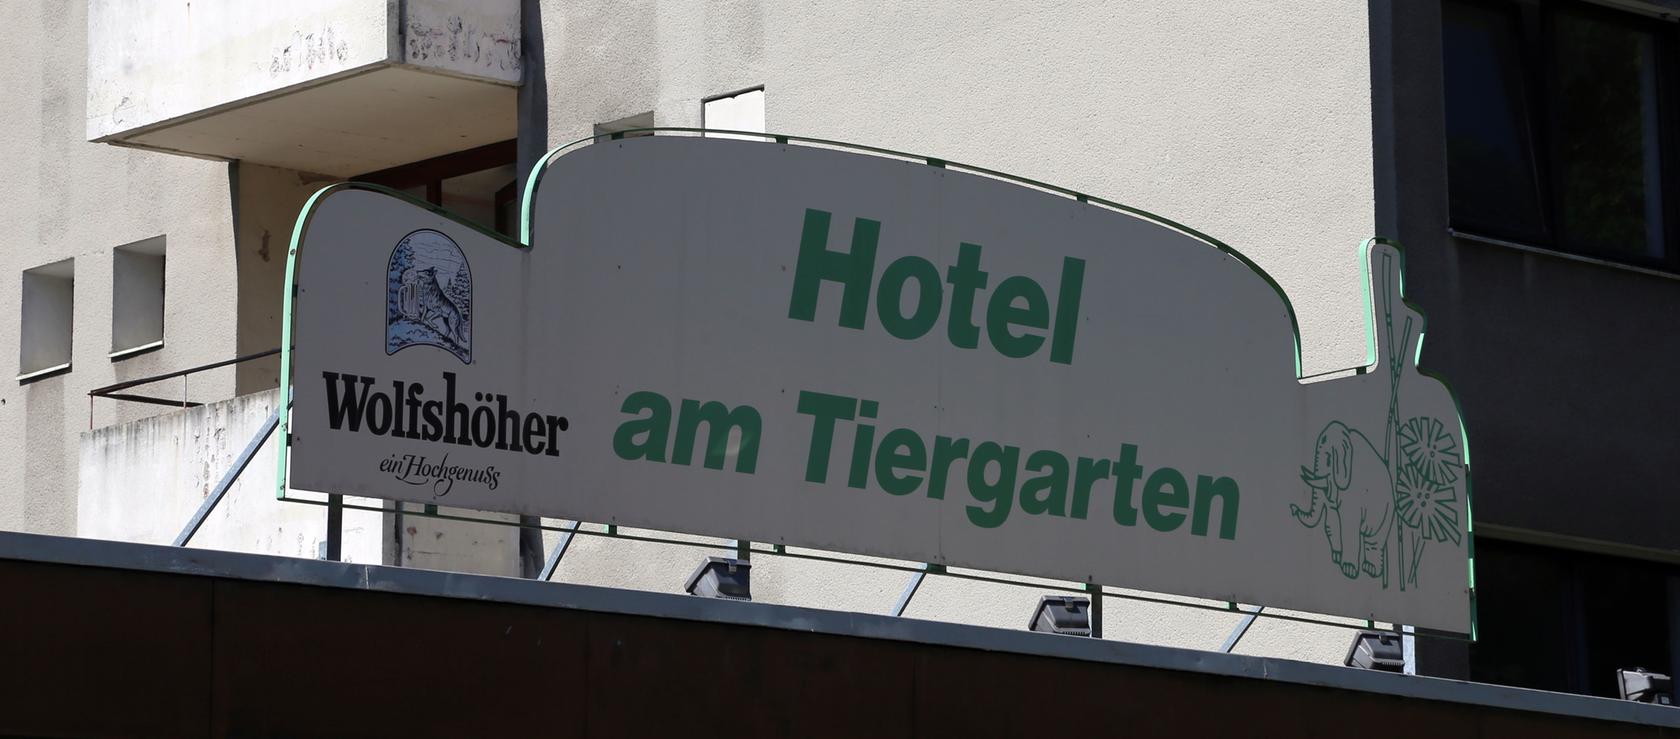 Rund 150 Flüchtlinge sollen im früheren Hotel am Tiergarten unterkommen, aber erst in einem Jahr.